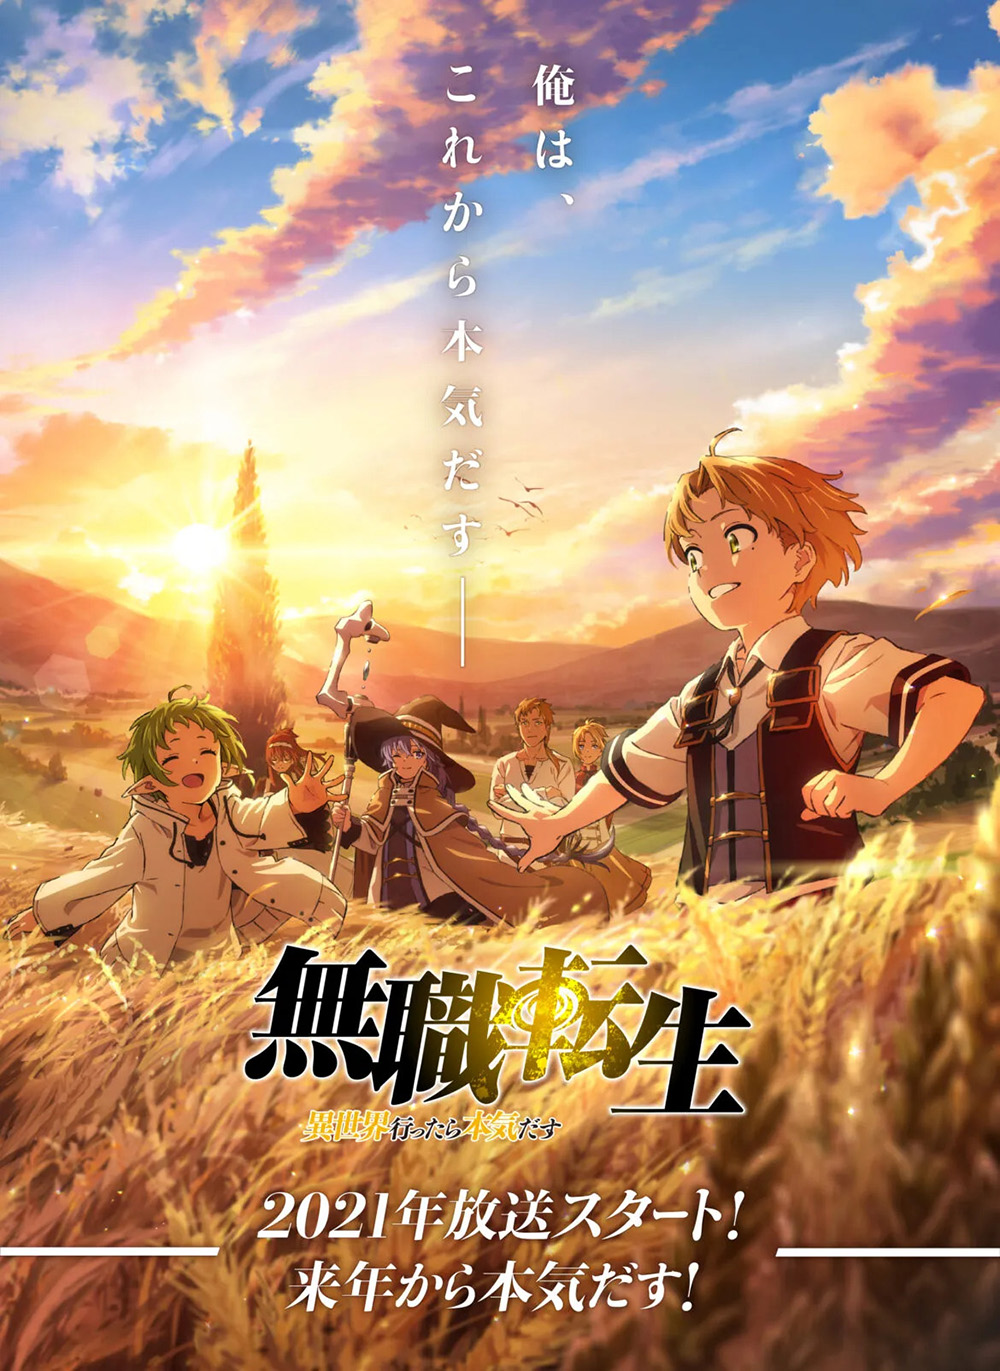 hình ảnh chính thức của anime Mushoku Tensei Season 1